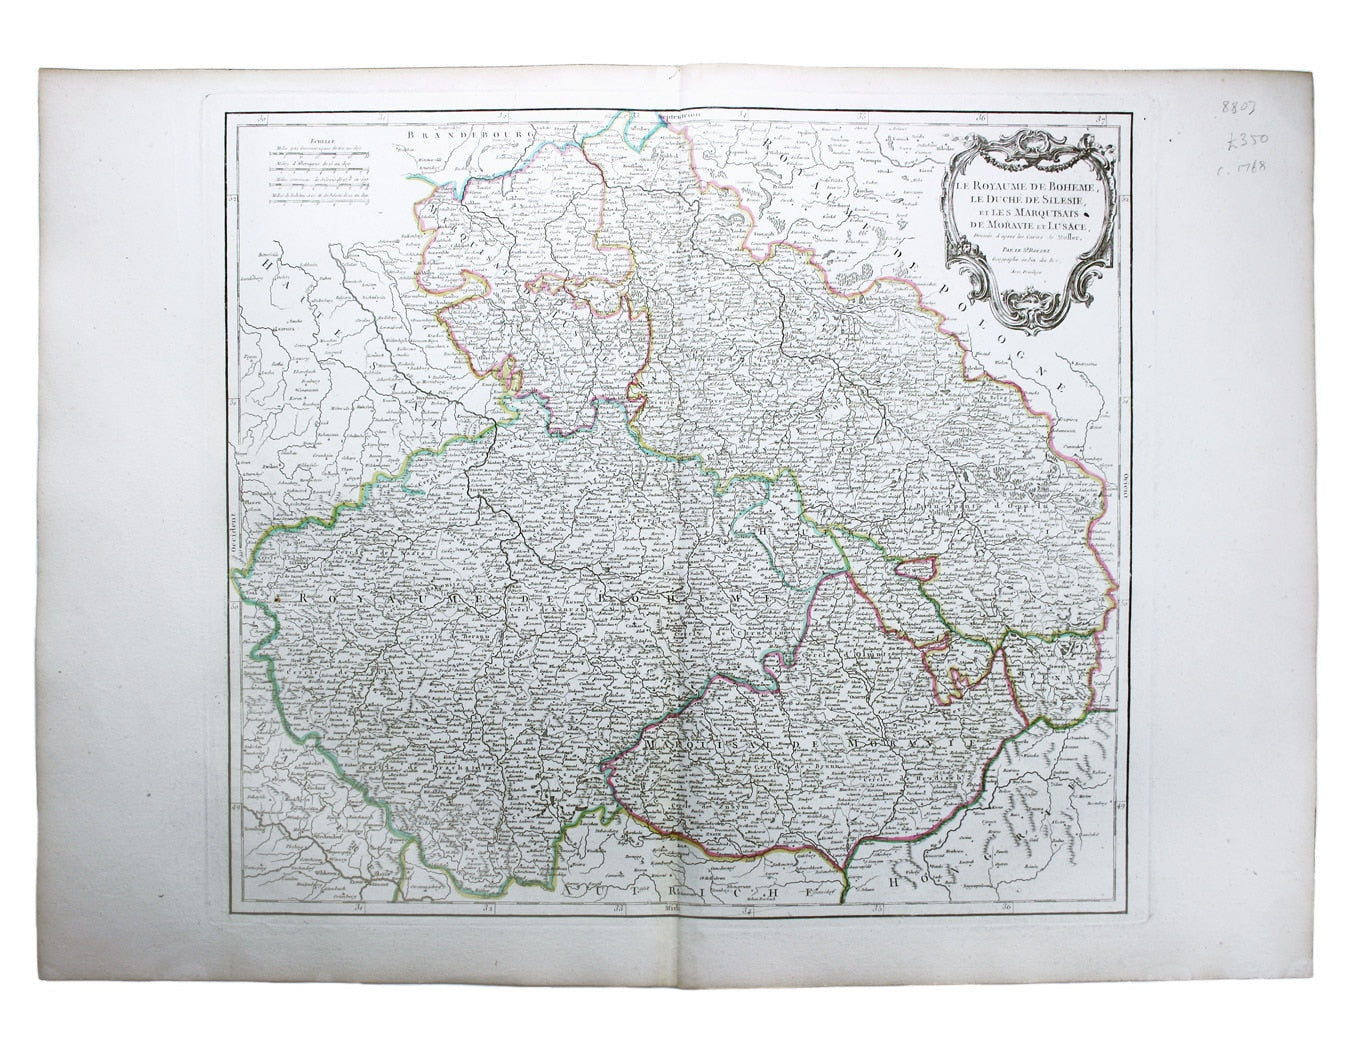 Robert de Vaugondy’s Map of the Czech Republic